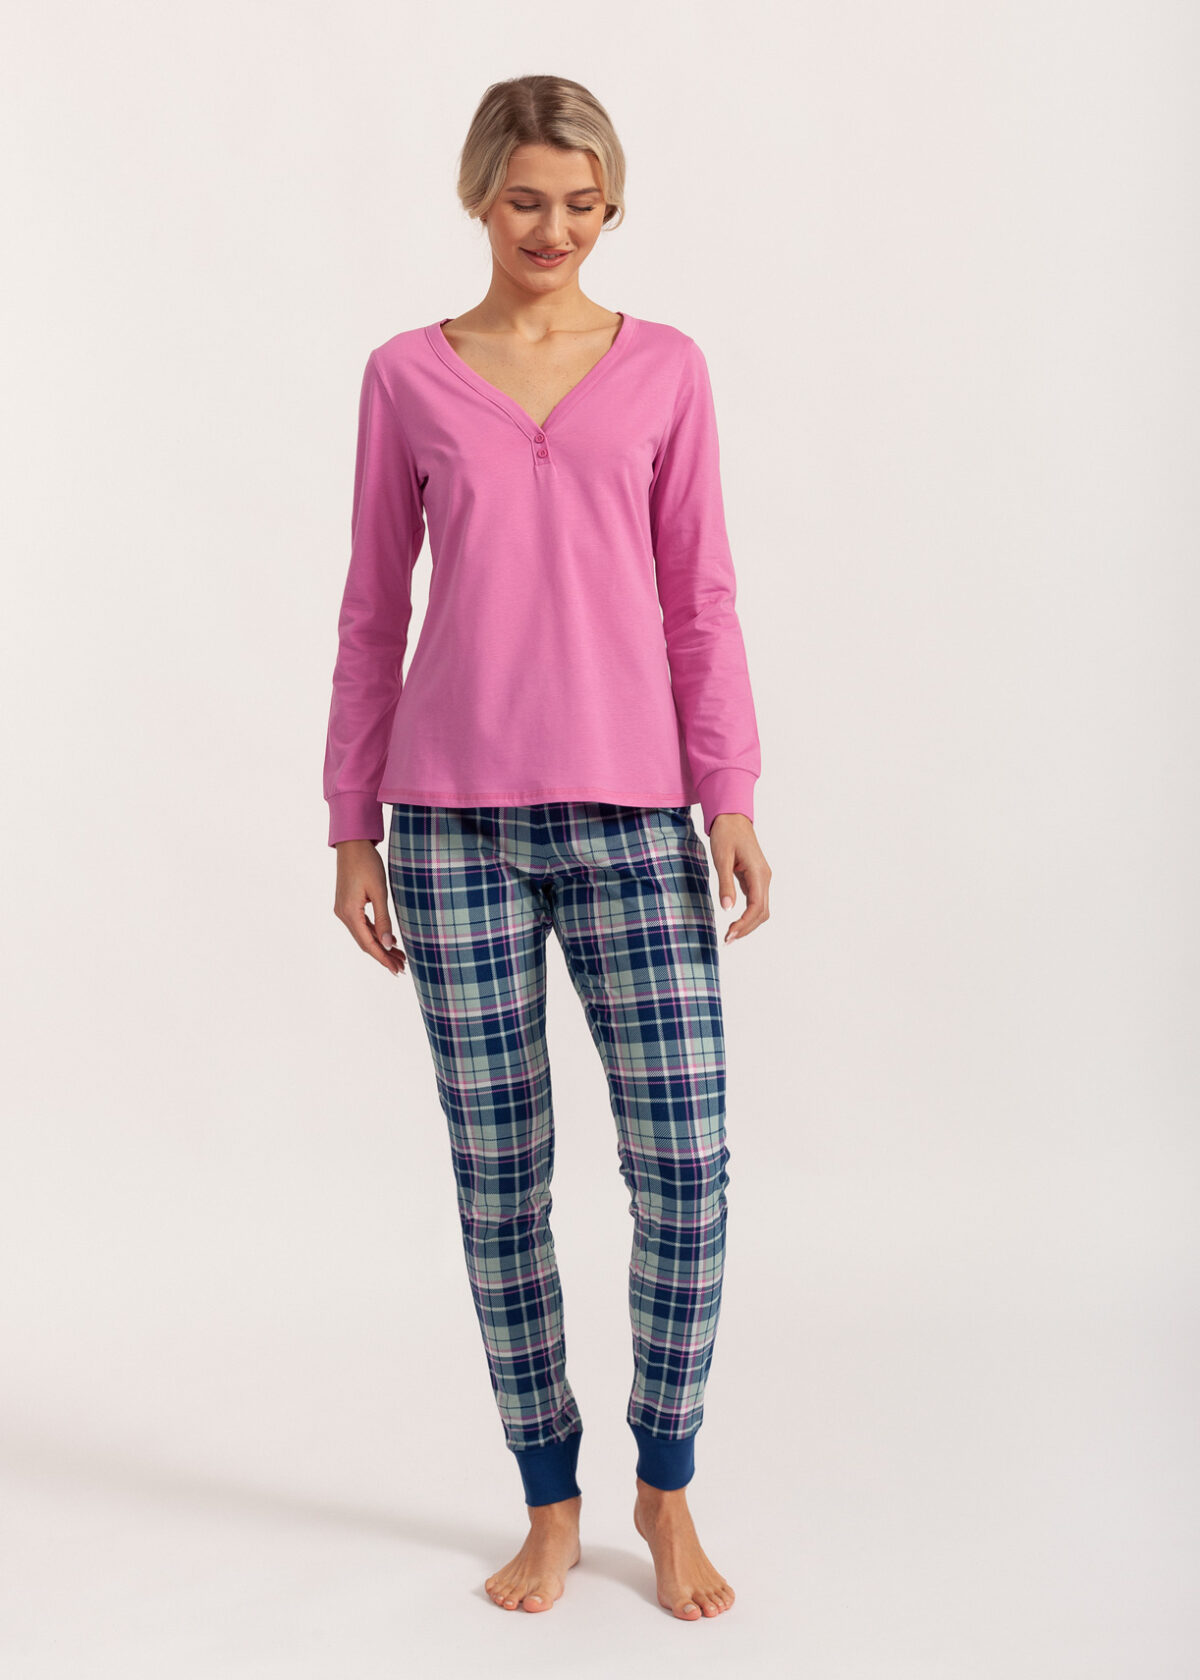 Pijama dama bumbac S21-033 Soft&Seven by Sofiaman, roz